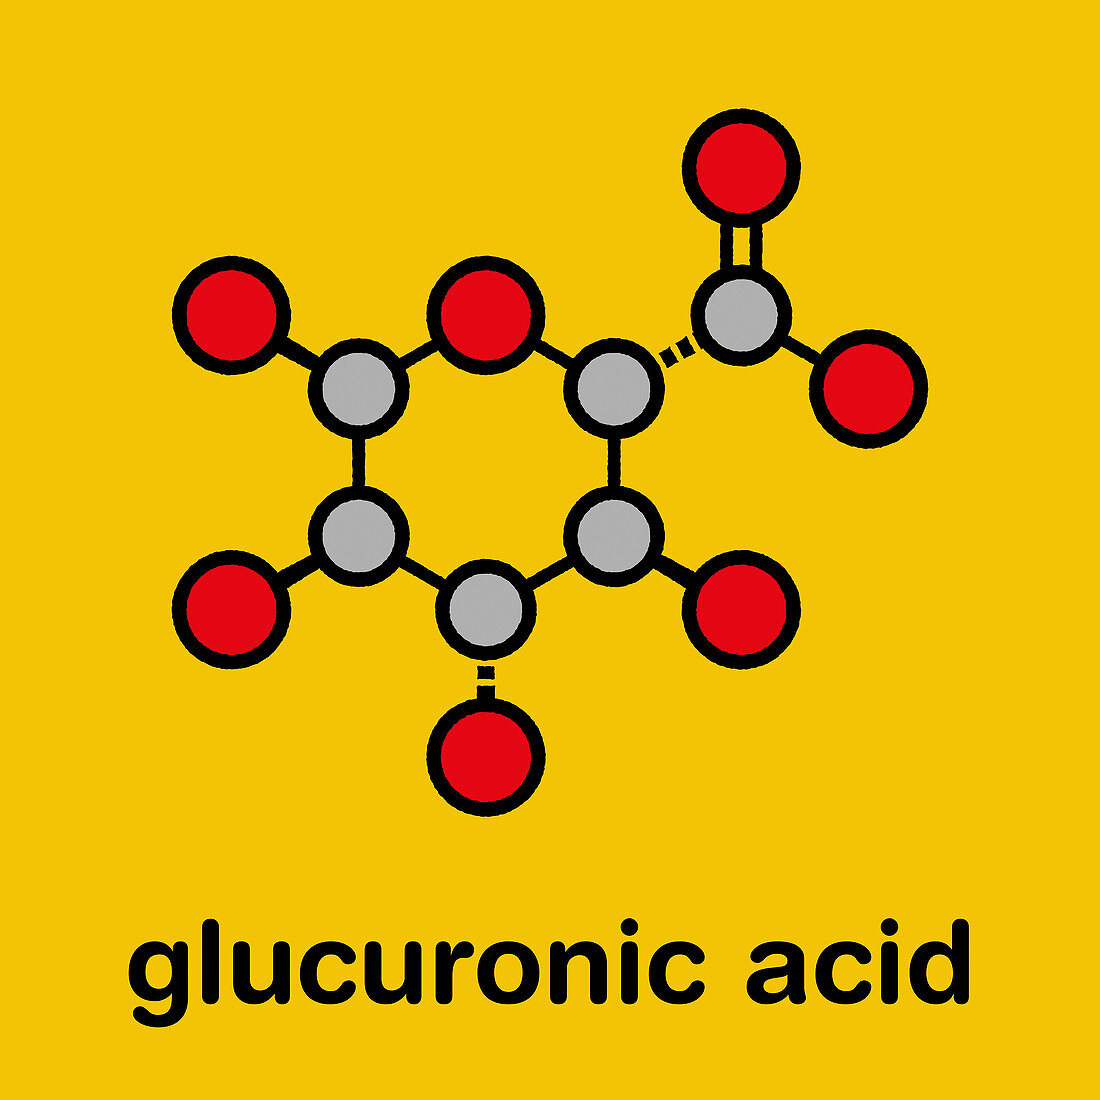 Glucuronic acid molecule